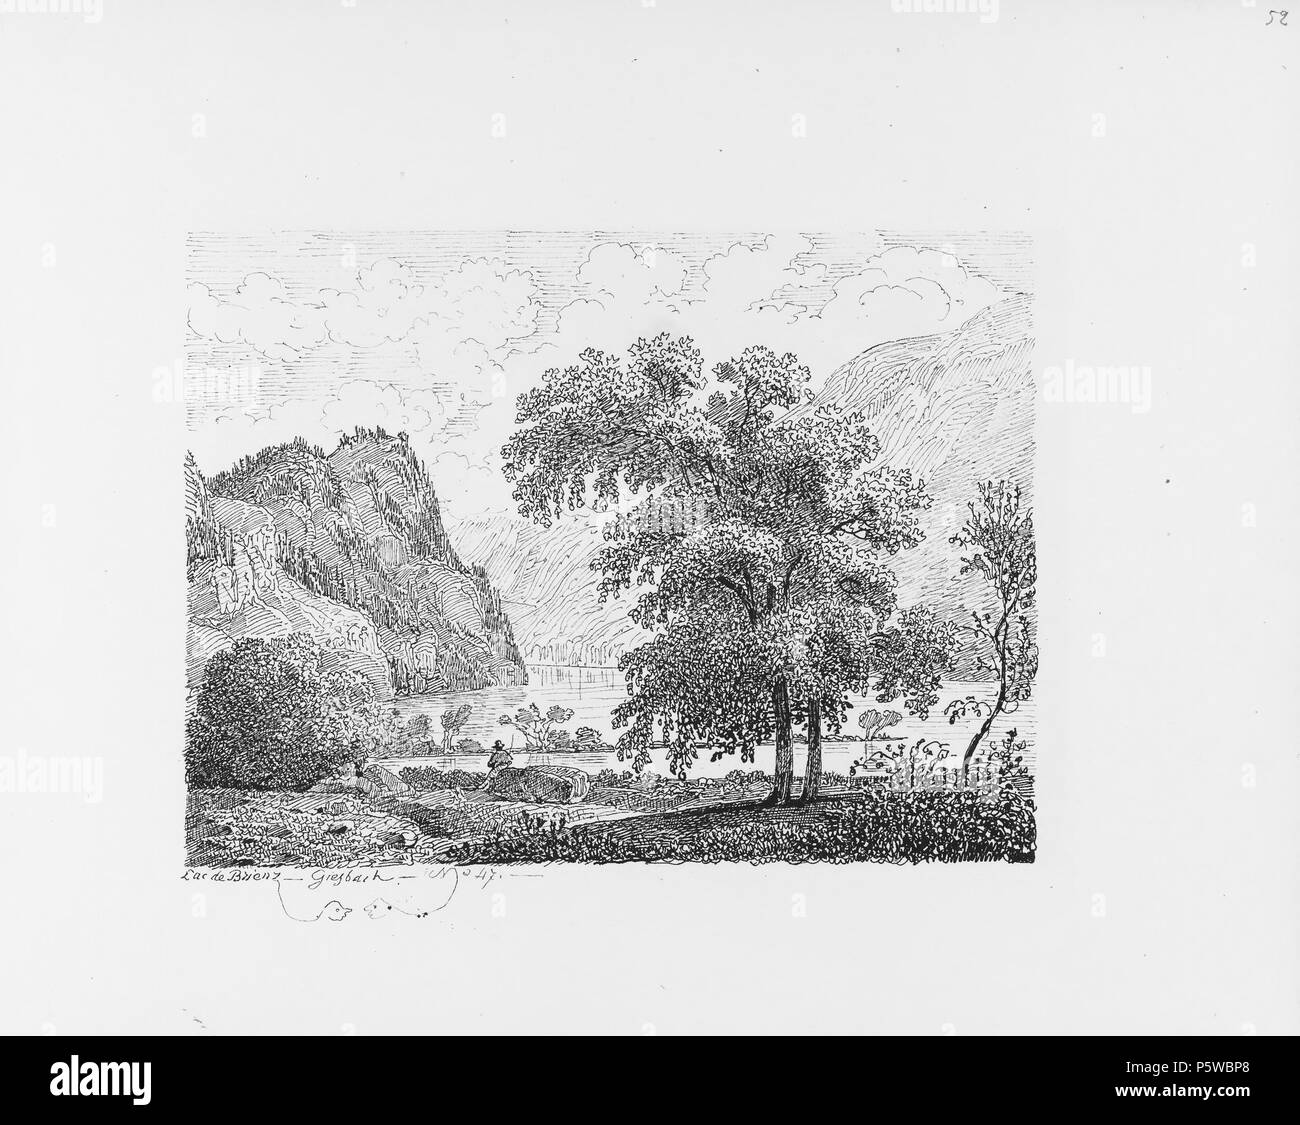 322 CH-NB-Voyage autour du Mont-Blanc dans les vallées d'Hérens de Zermatt et au Grimsel 1843-nbdig-19161-053 Stock Photo